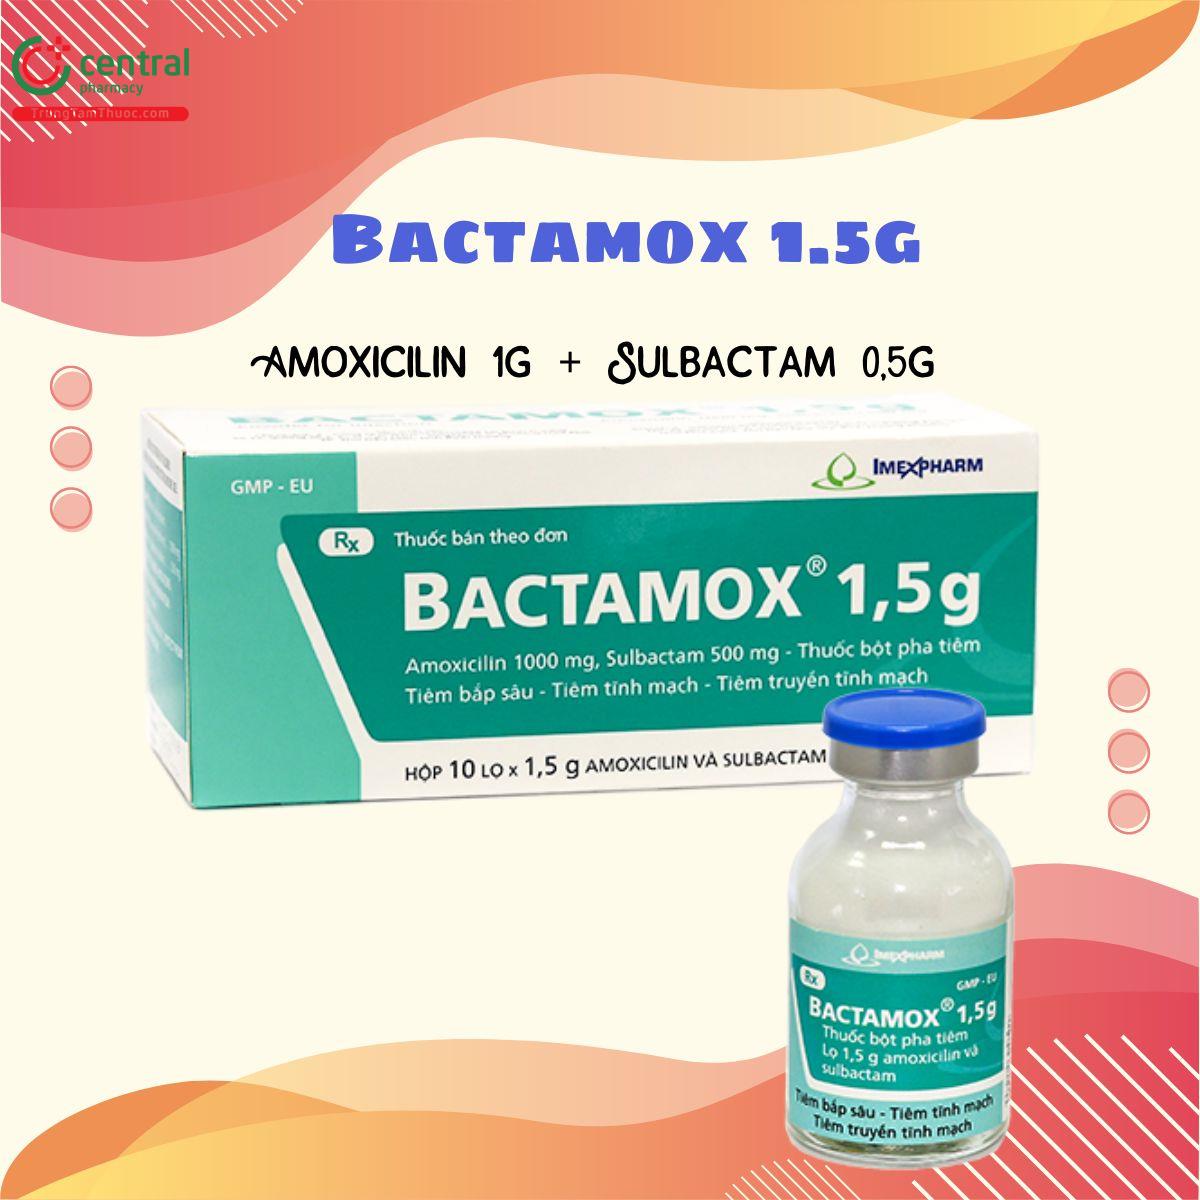 Thuốc Bactamox 1.5g điều trị nhiễm khuẩn hô hấp, ổ bụng, tiết niệu